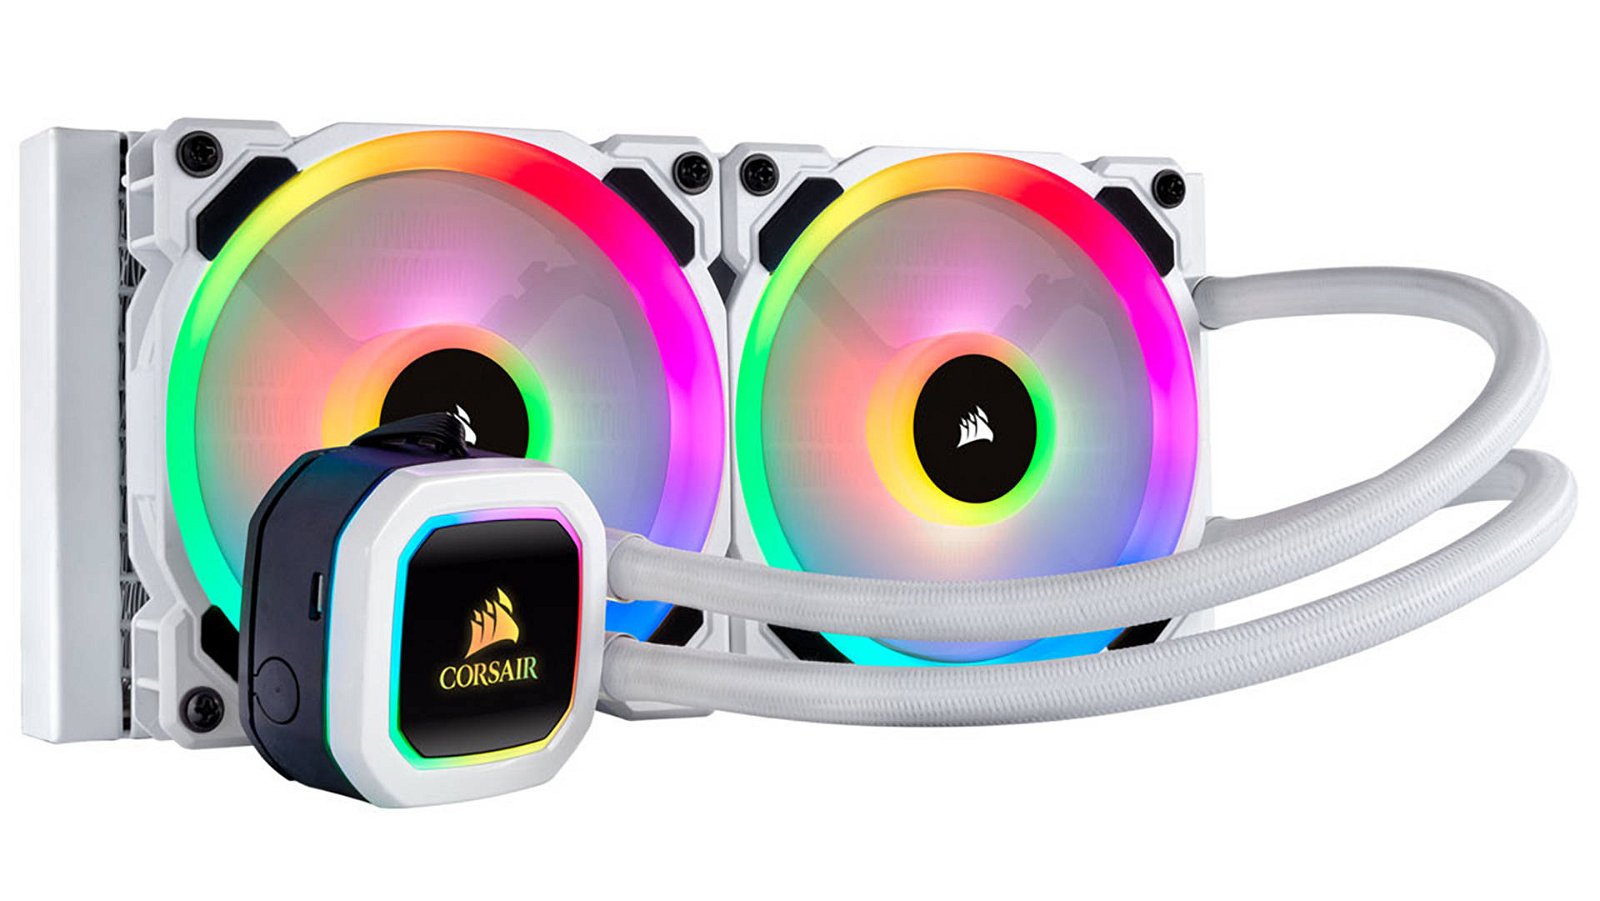 Immagine di Corsair iCUE RGB Pro XT, la nuova gamma di dissipatori AIO è finalmente disponibile